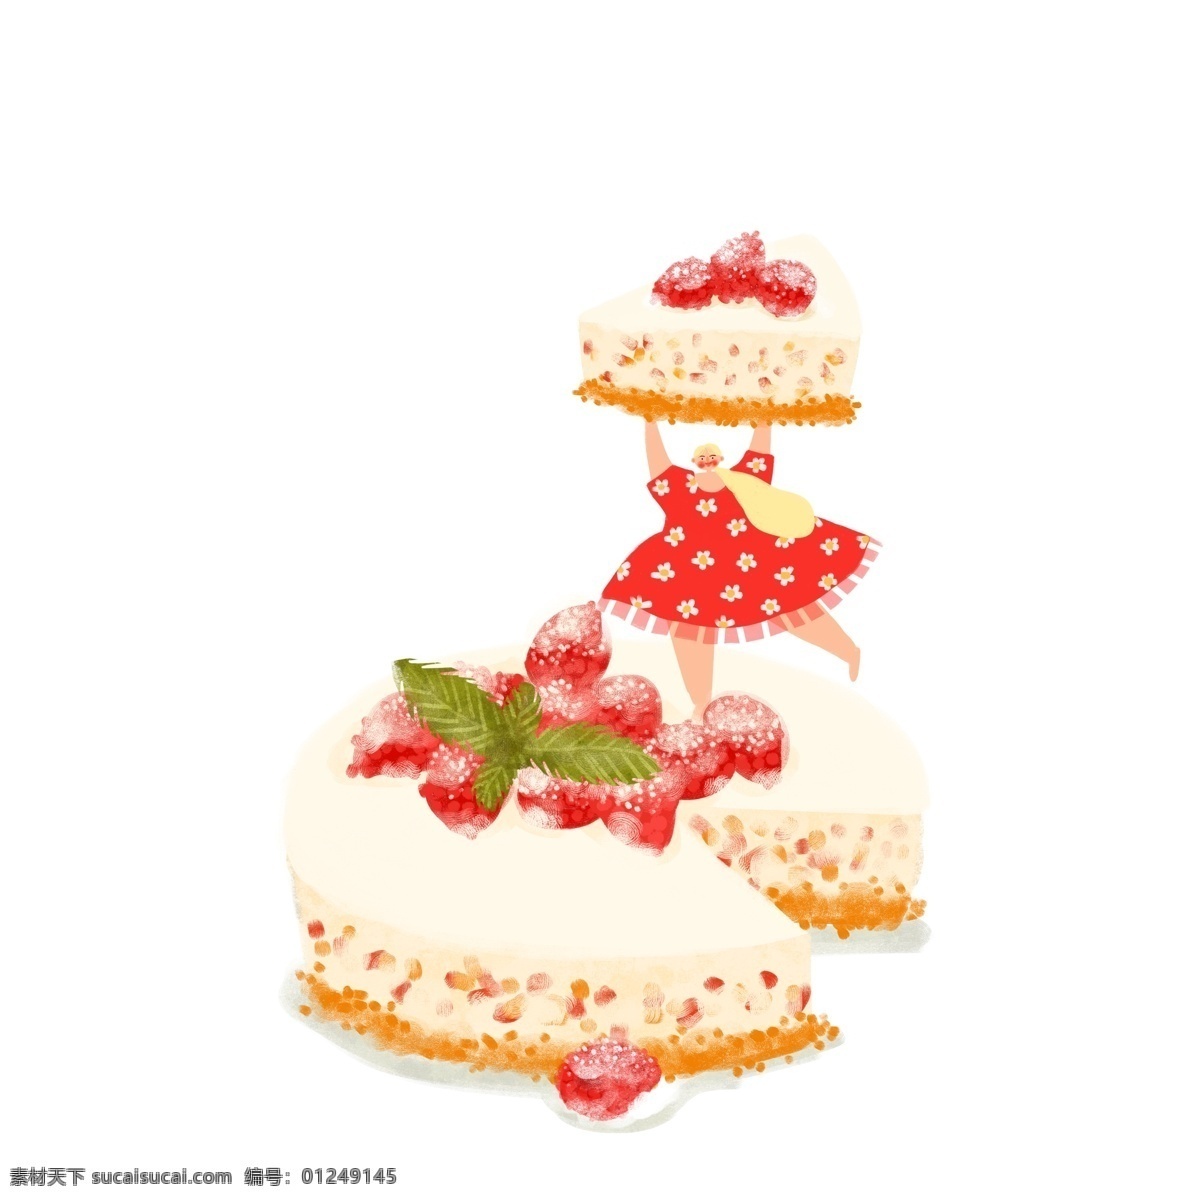 美食 大作 战 芝士 蛋糕 元素 插画 糕点 食物 女孩 甜食 甜点 芝士蛋糕 美味蛋糕 卡通元素